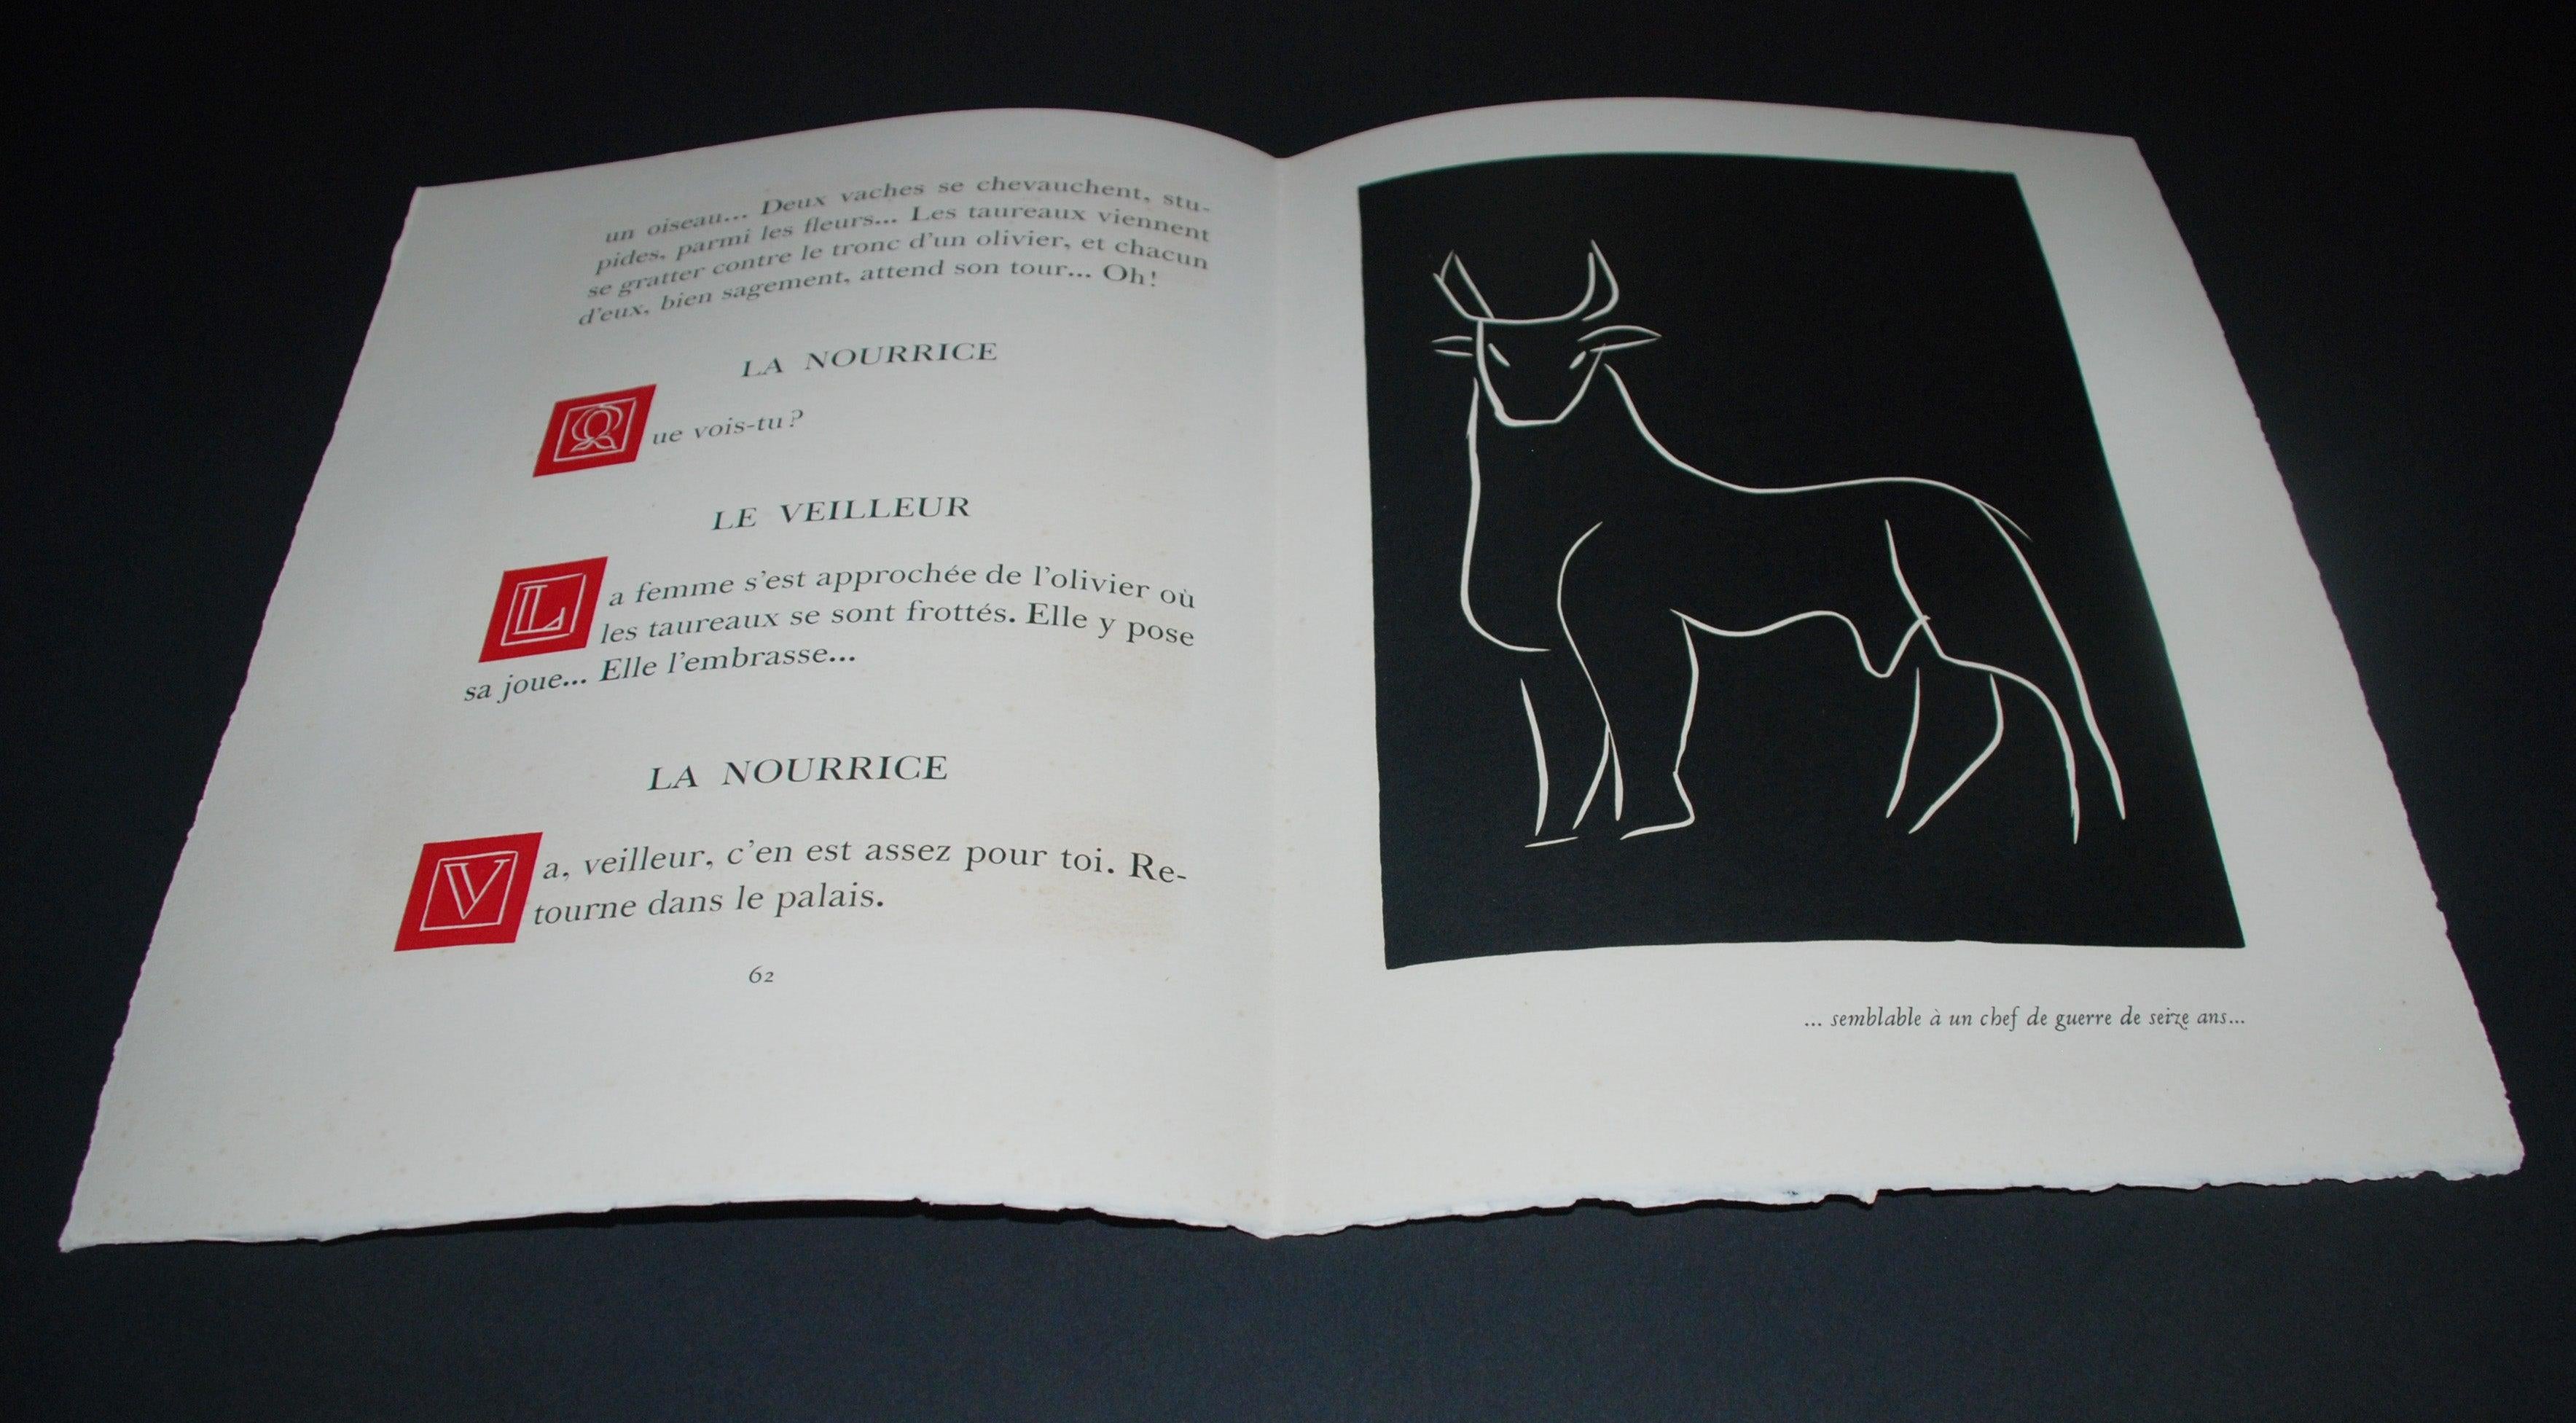 Pasiphae Plate 11: Semblable á un chef de guerre de seize ans - Modern Print by Henri Matisse